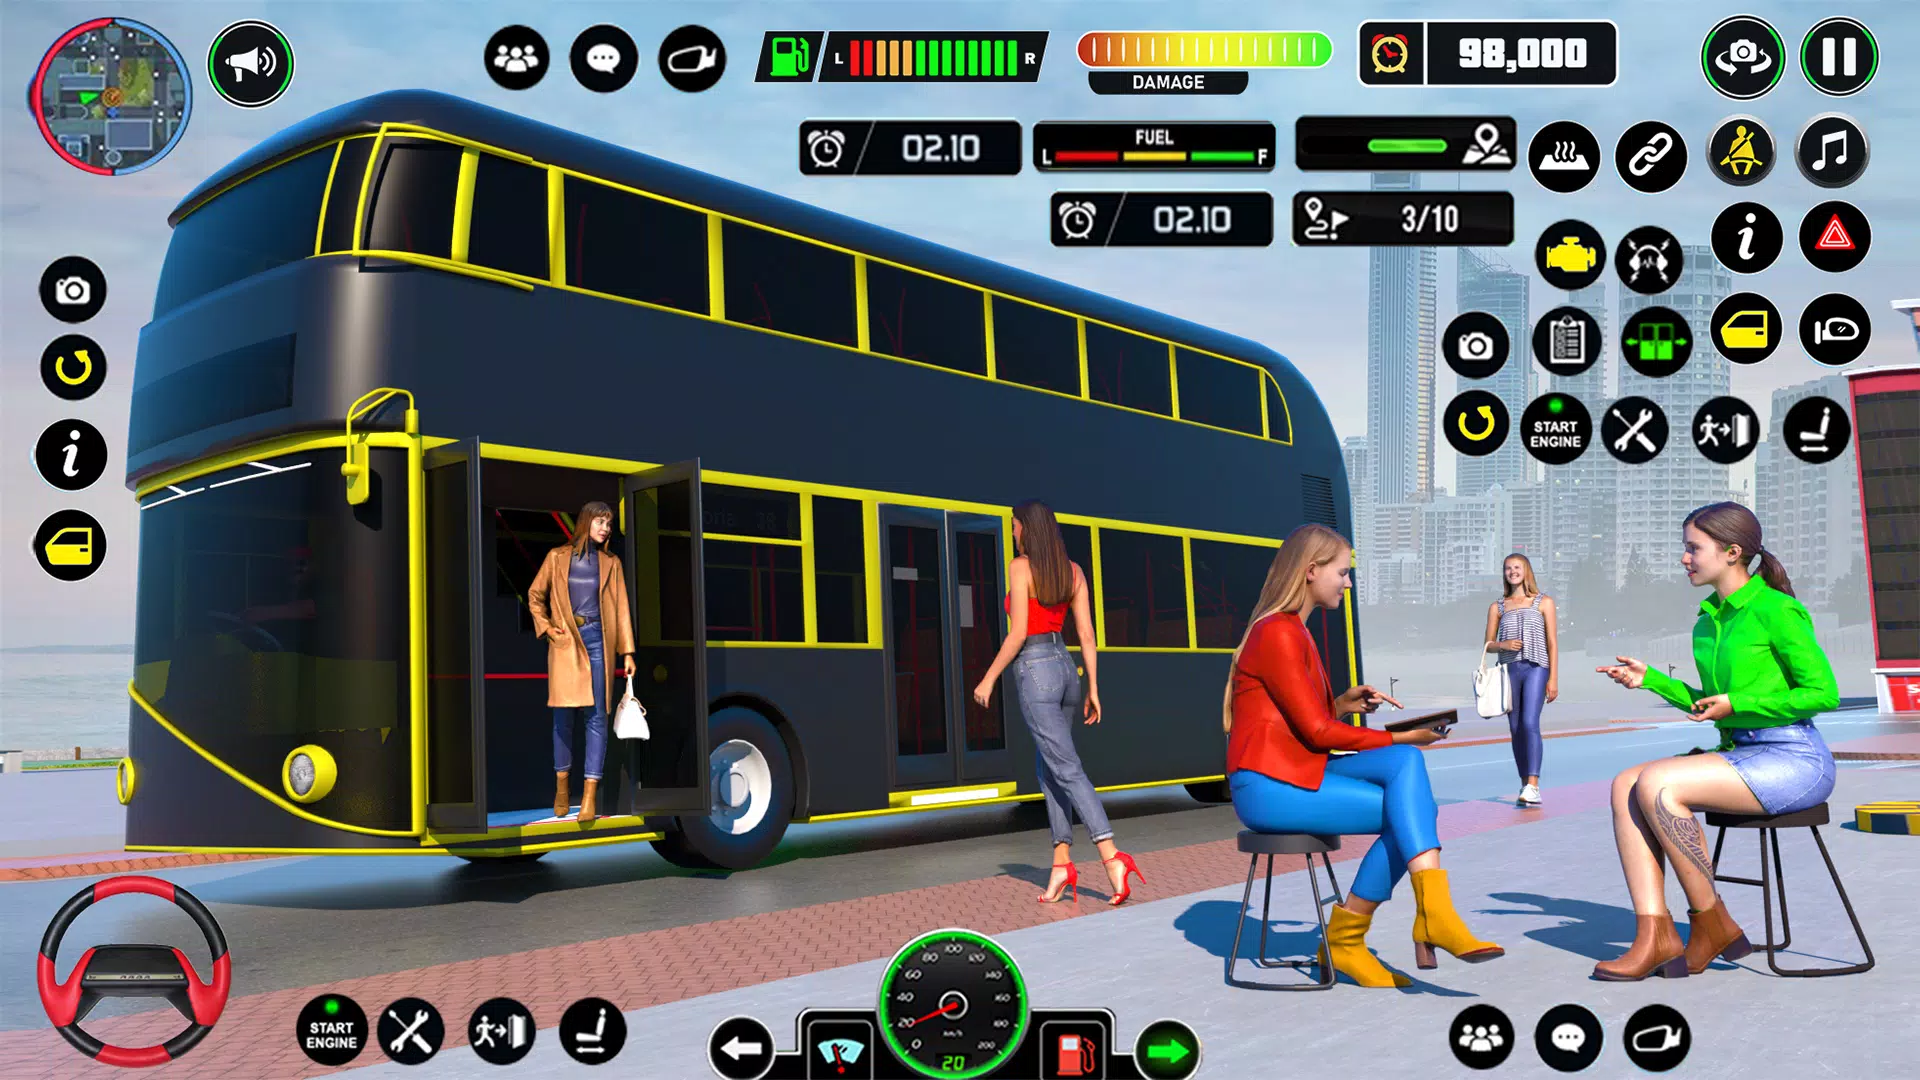 Coach Bus Simulator - Jogo Gratuito Online